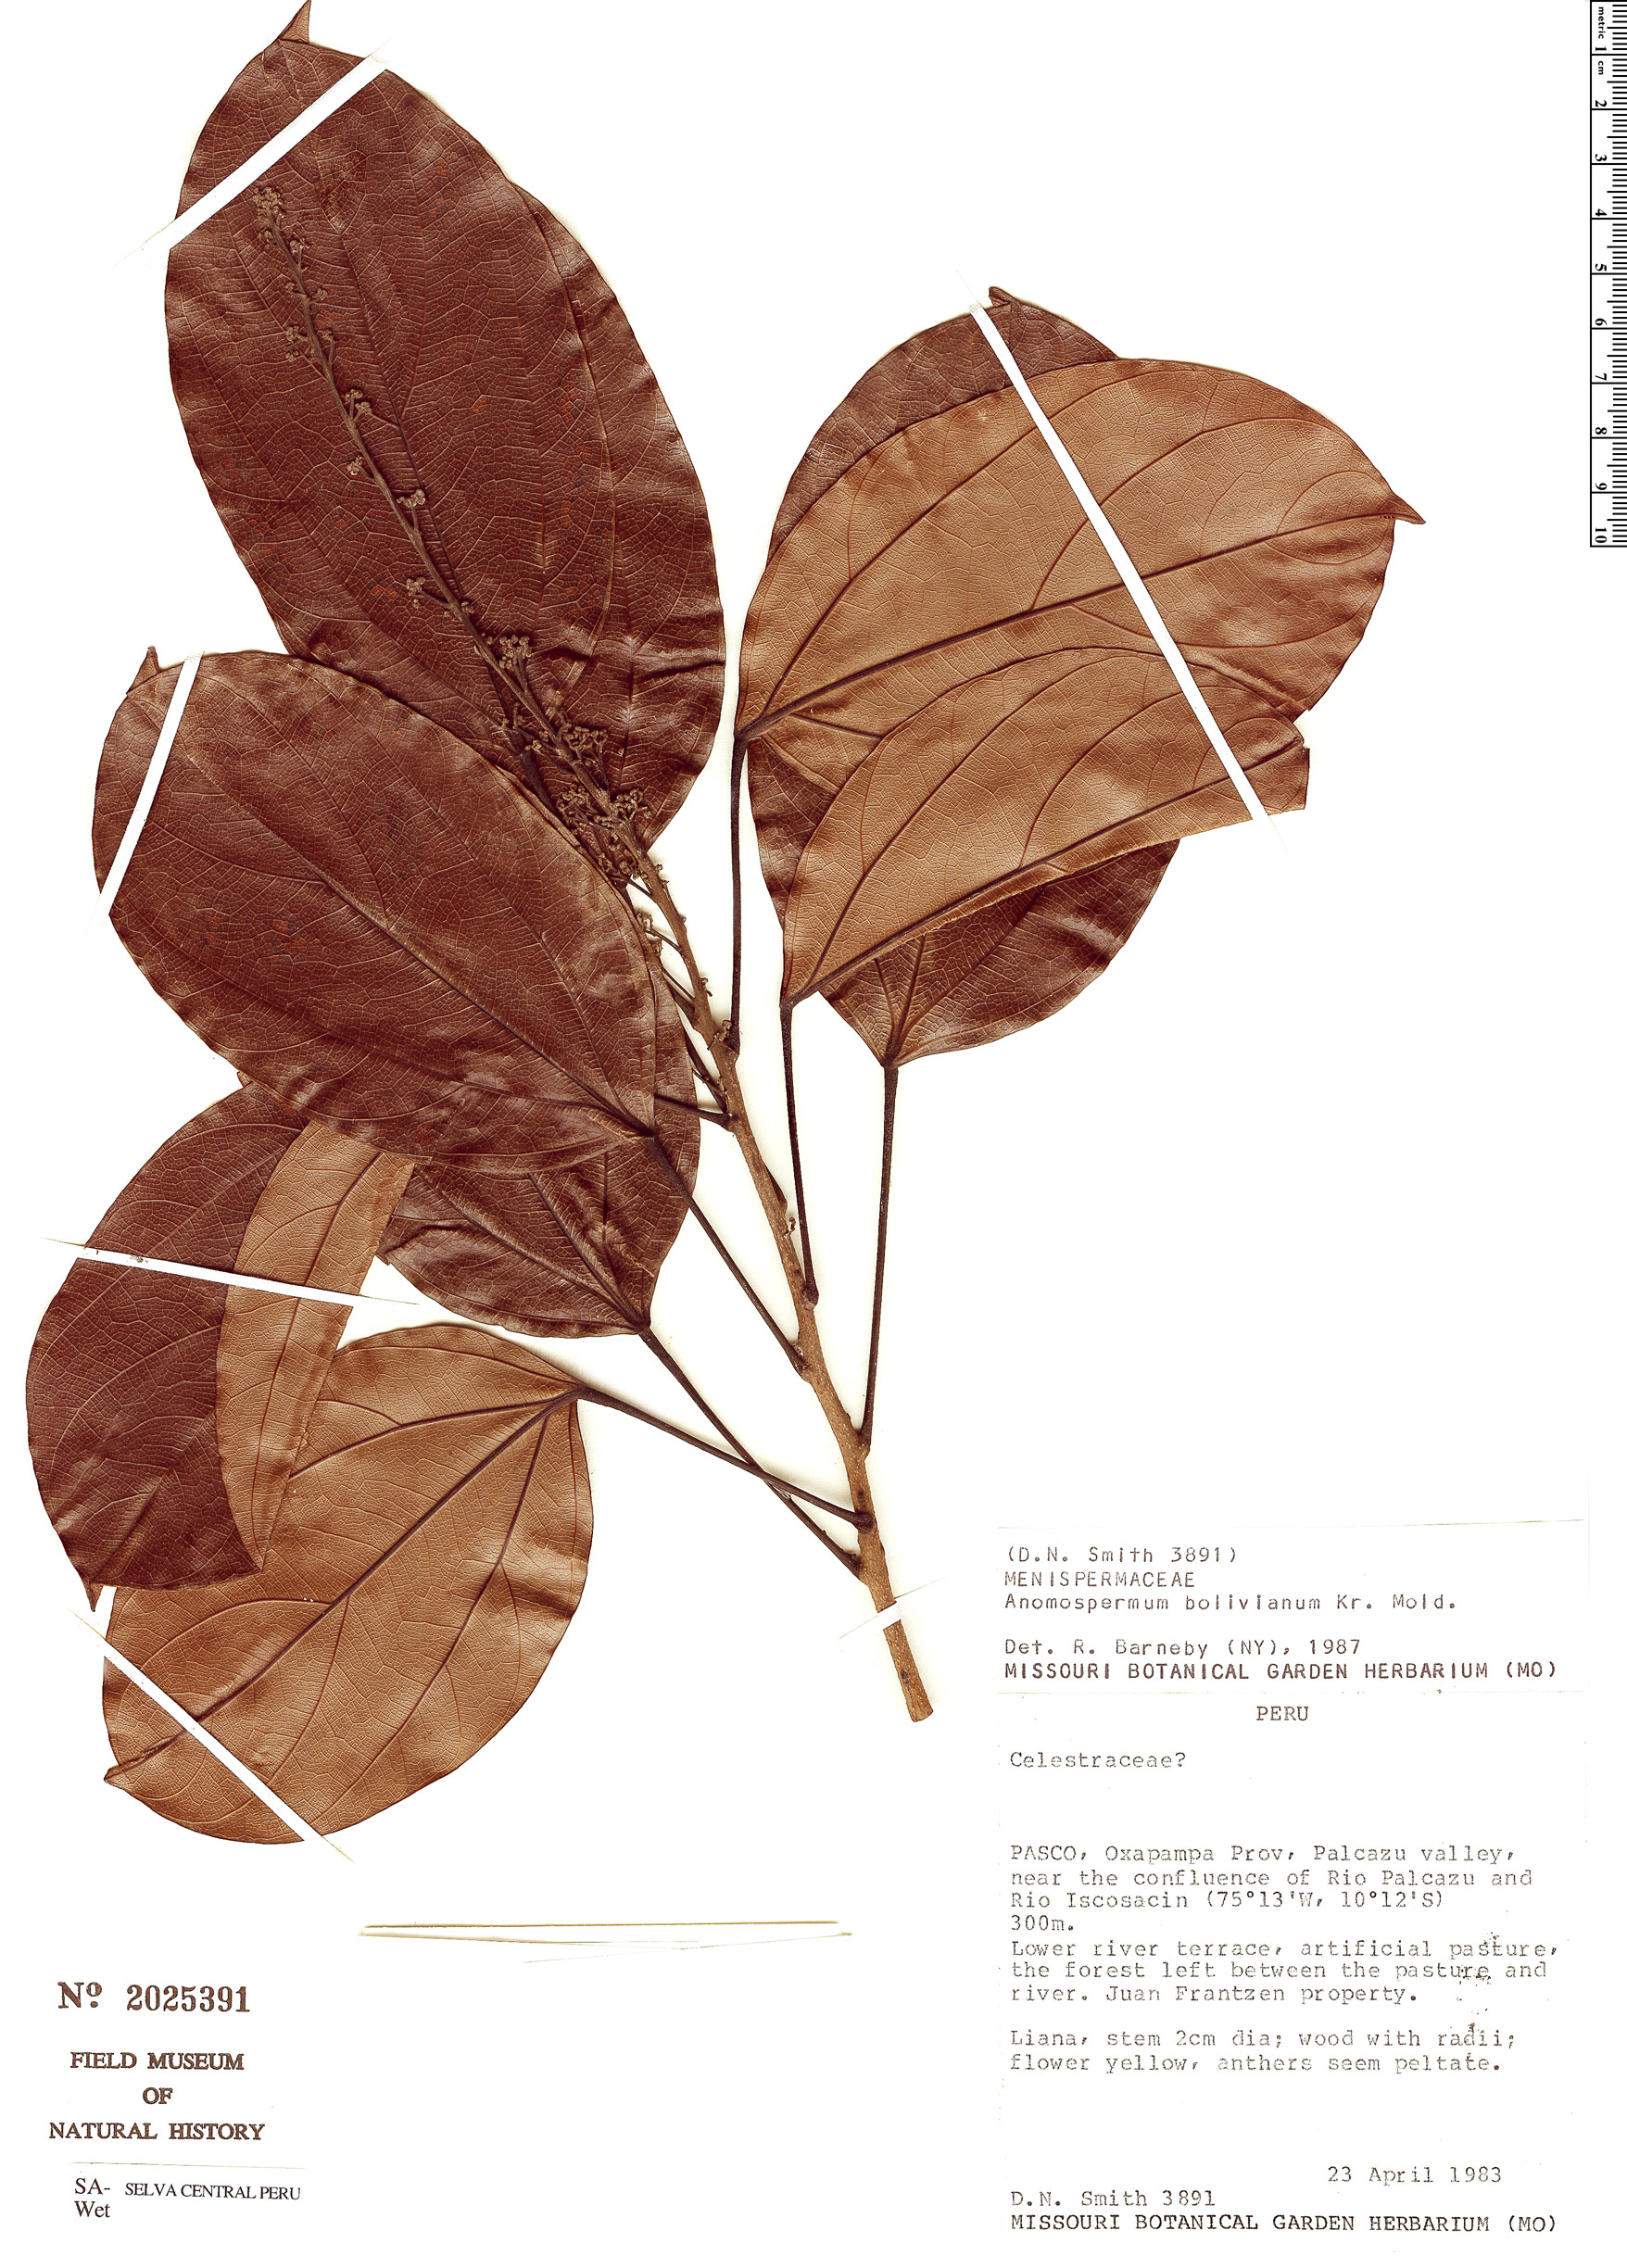 Anomospermum bolivianum image